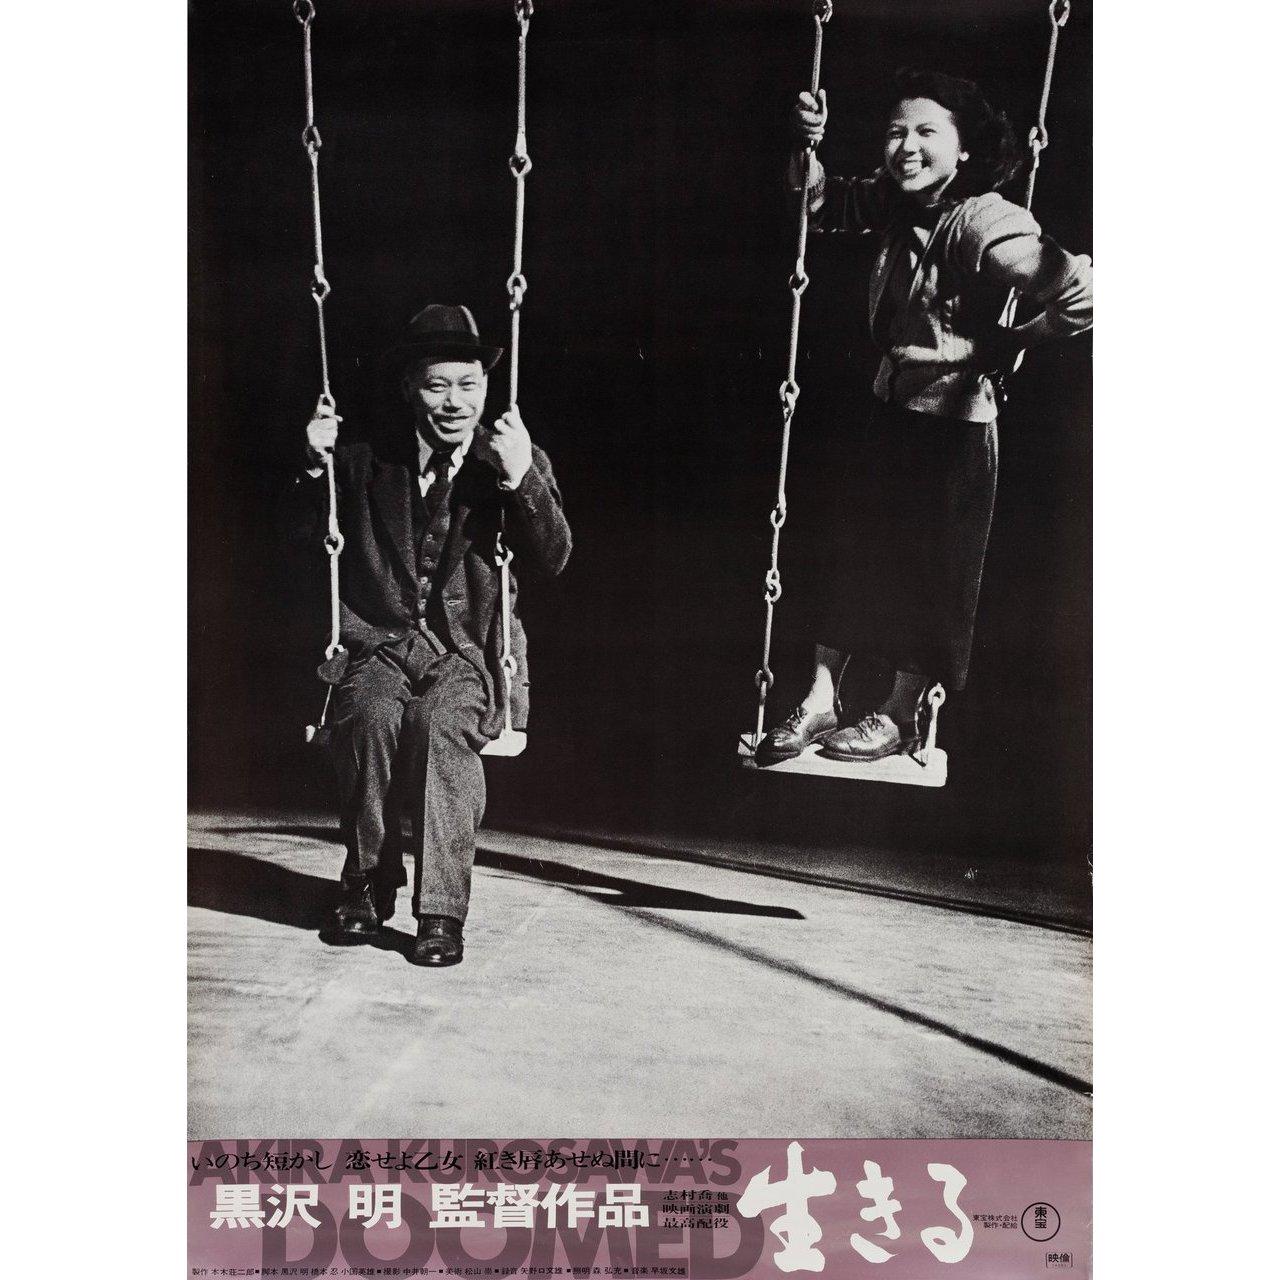 Affiche B2 japonaise originale de 1974 pour le film Ikiru (Doomed) de 1952 réalisé par Akira Kurosawa avec Takashi Shimura / Shin'ichi Himori / Haruo Tanaka / Minoru Chiaki. Bon état, roulé. Veuillez noter que la taille est indiquée en pouces et que